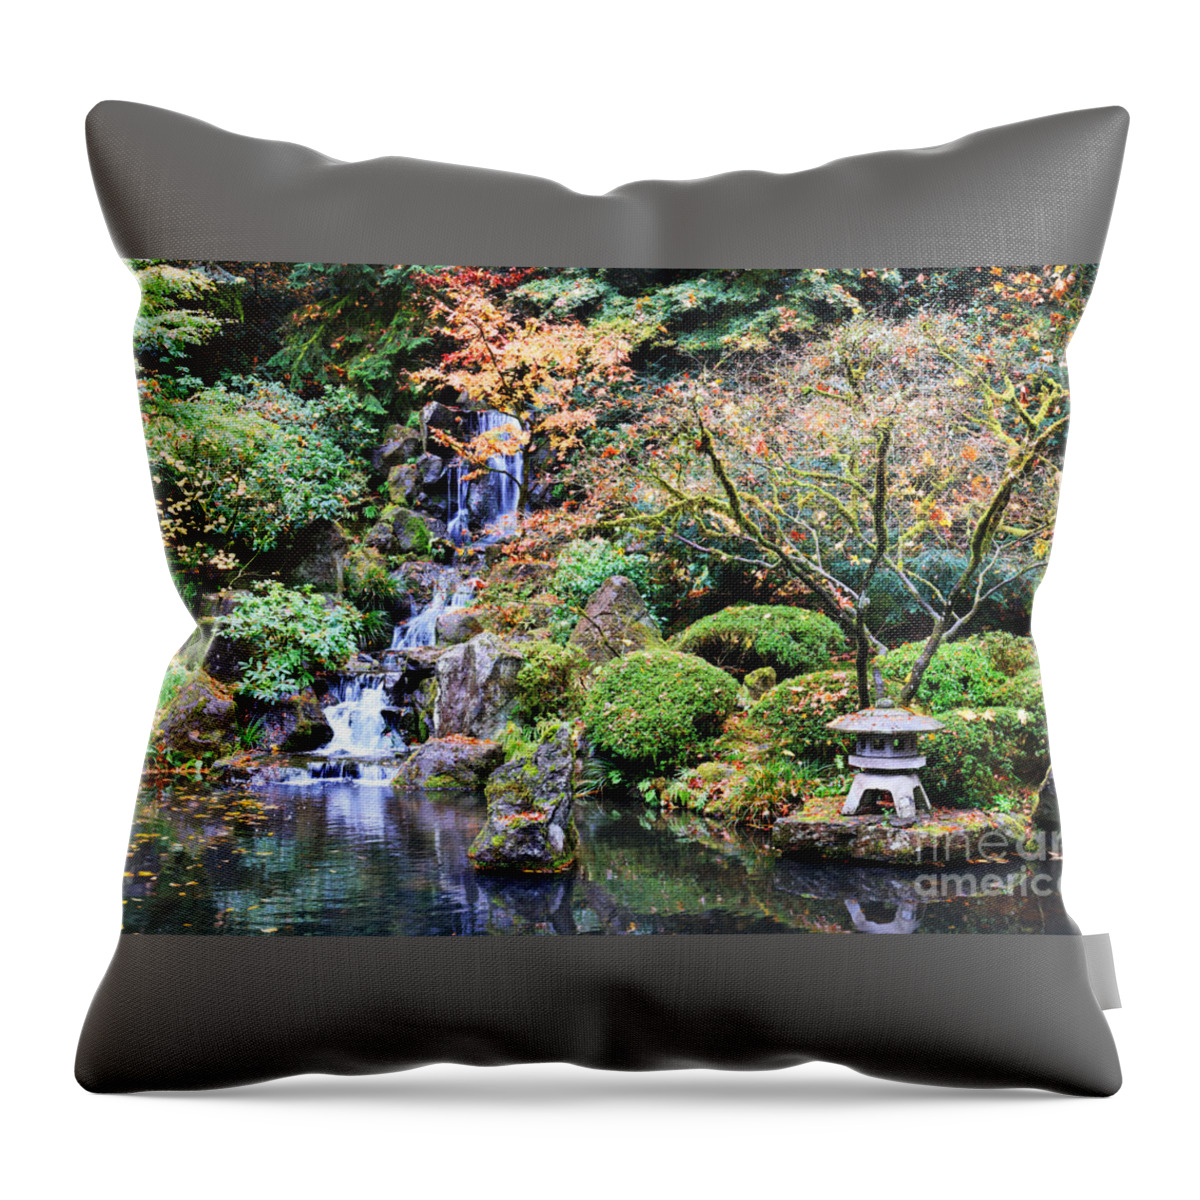 Japanese Gardens Throw Pillow featuring the photograph Autumn Zen by Carol Groenen